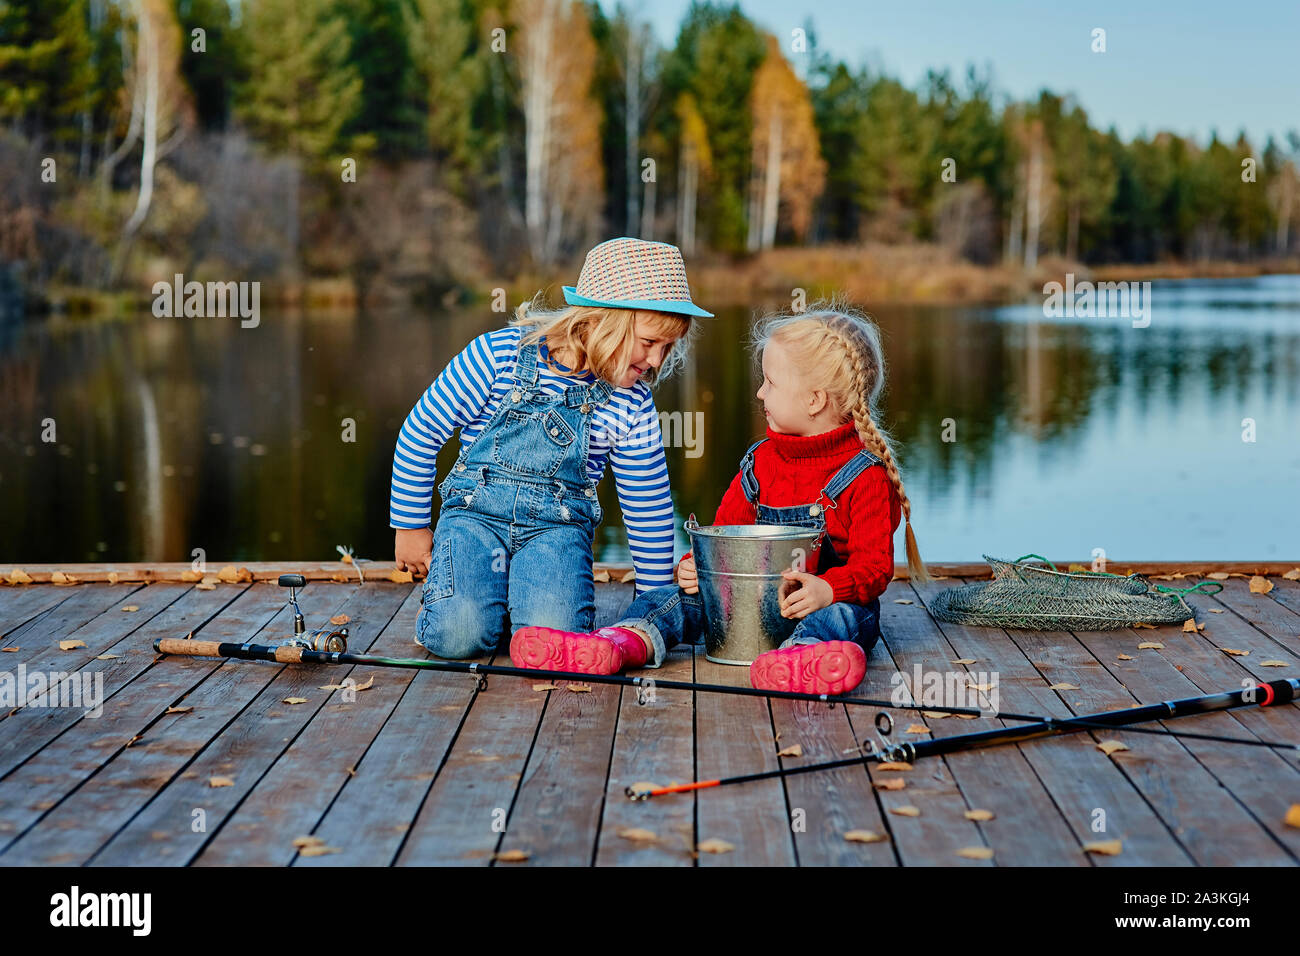 Deux petites sœurs ou vos amis de s'asseoir avec des cannes à pêche sur une jetée en bois. Ils ont attrapé un poisson et le mettre dans un seau. Ils sont heureux avec leurs prises et d Banque D'Images